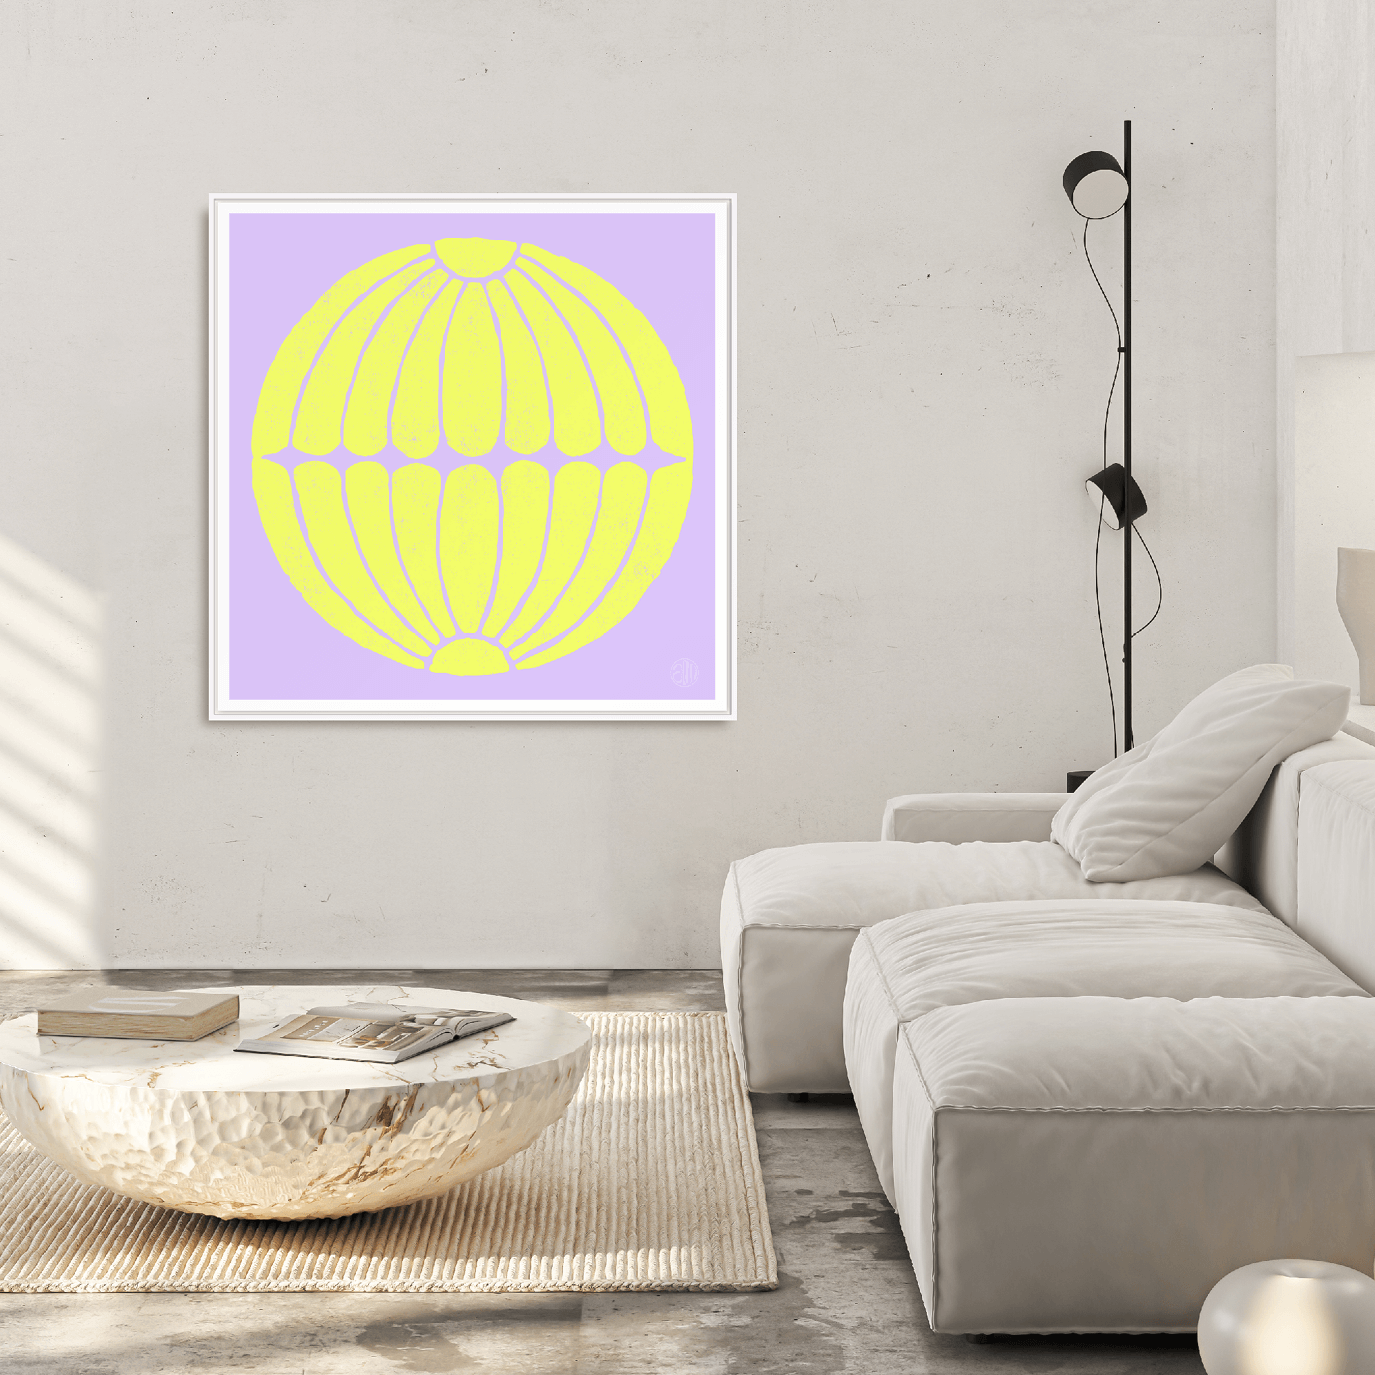 Ein gerahmter Siebdruck von einer Chrysantheme hängt an der Wand von einem Wohnzimmer mit coolem Atelier Flair